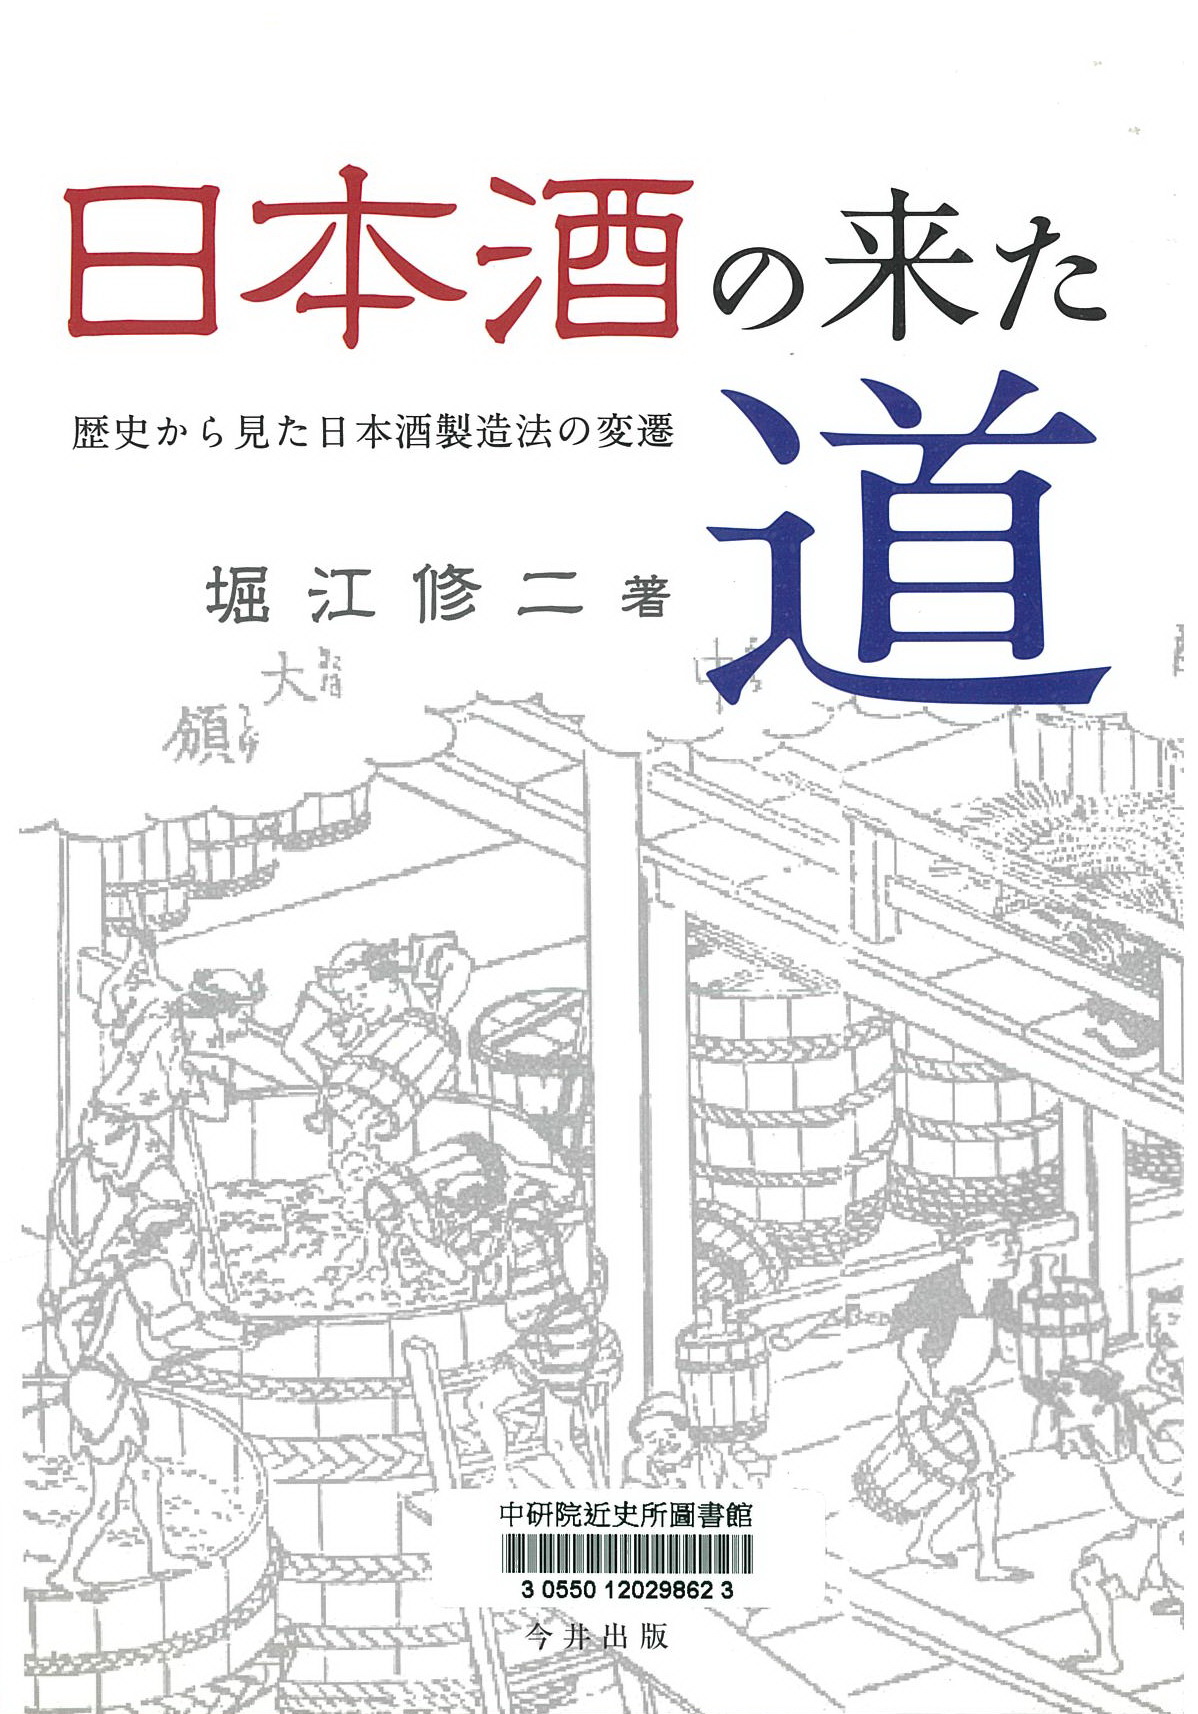 日本酒の来た道 : 歴史から見た日本酒製造法の変遷